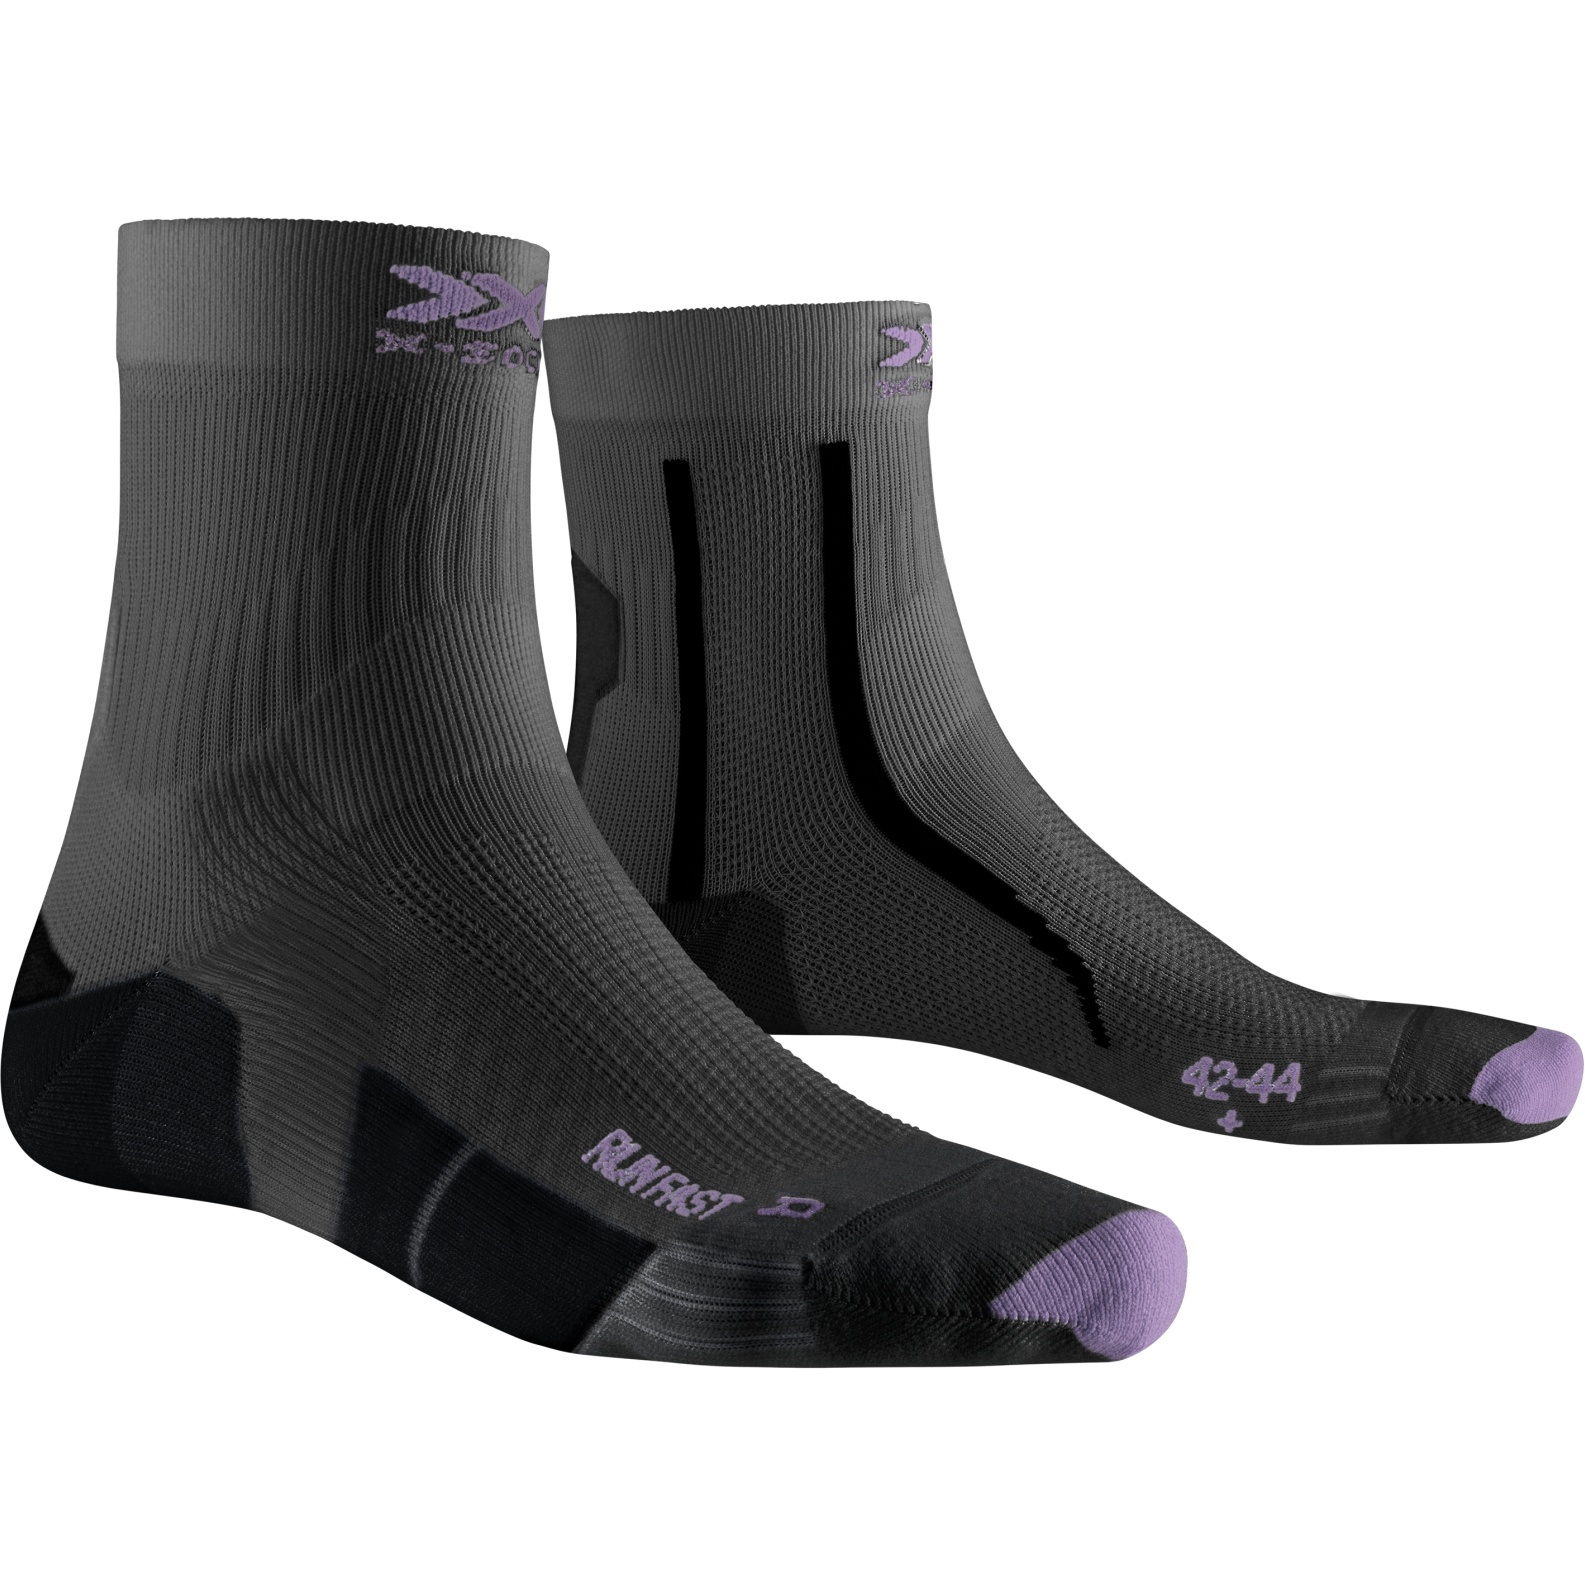 Produktbild von X-Socks Run Fast 4.0 Laufsocken - charcoal/invent lavender